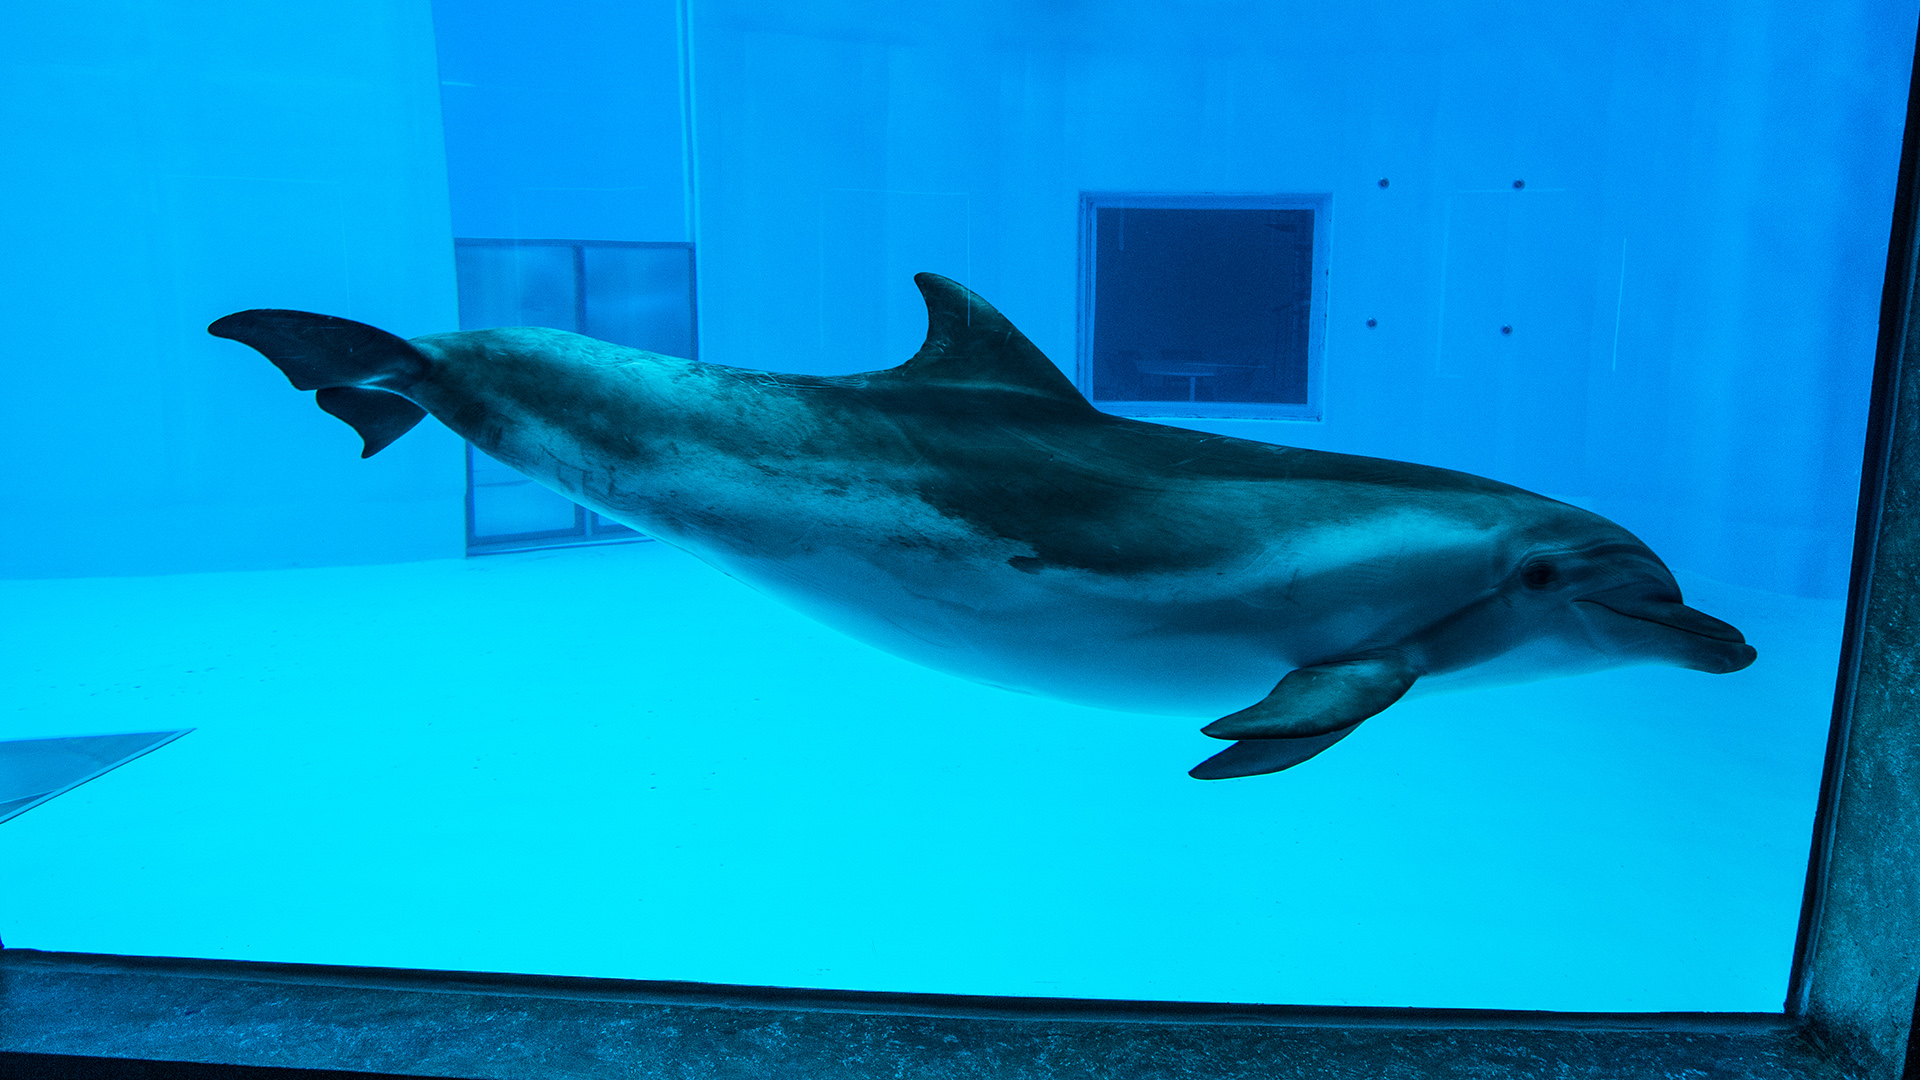 A dolphin swims behind glass in an aquarium